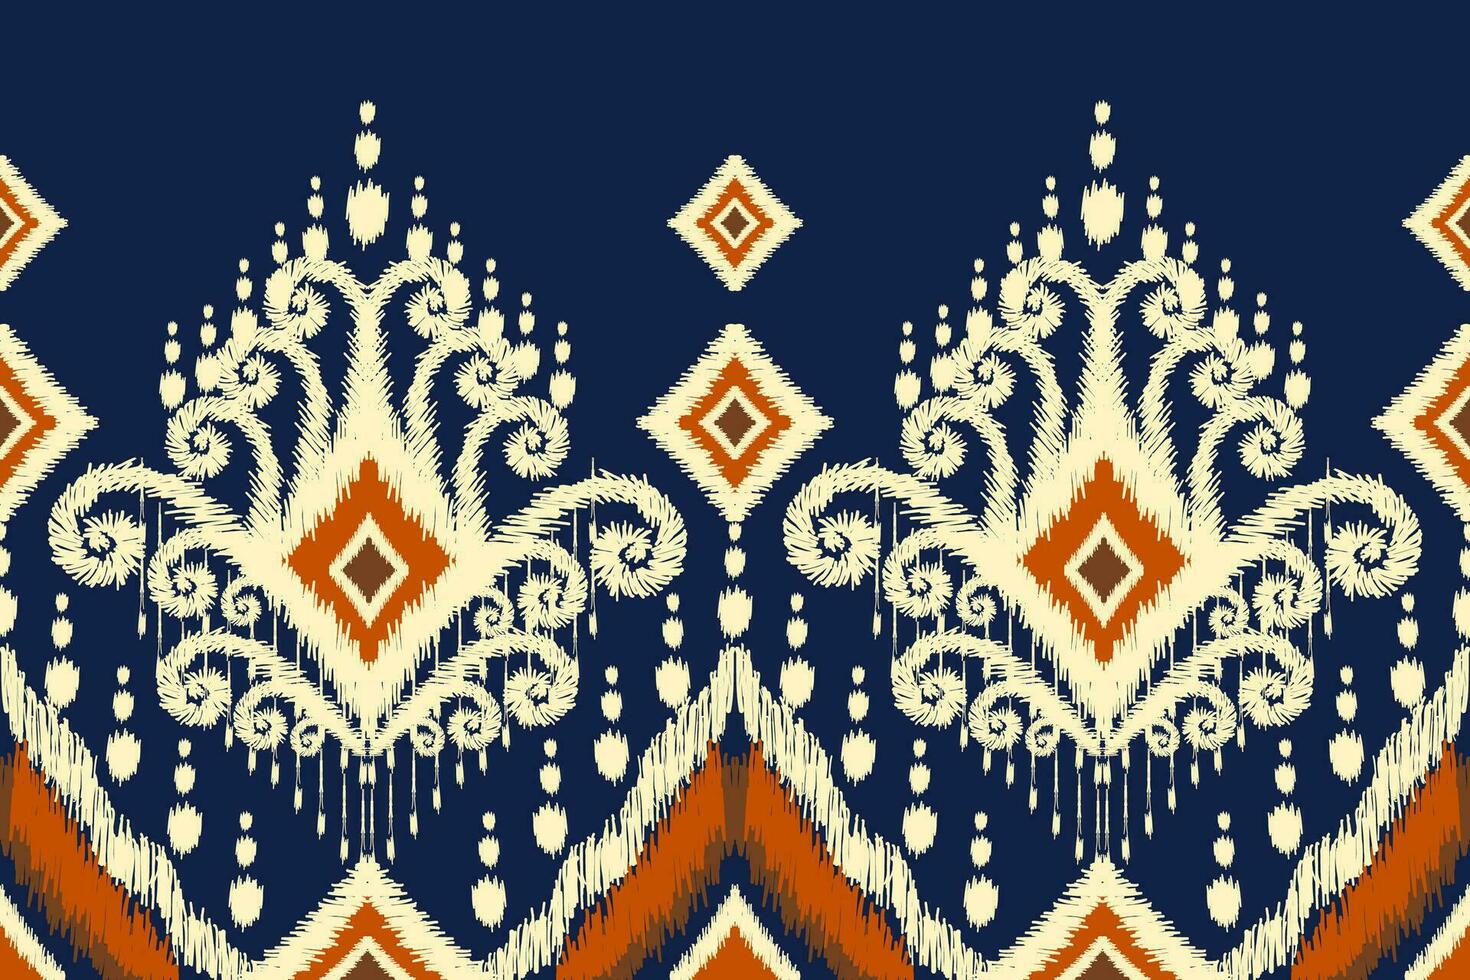 ikat floral paisley bordado em azul plano de fundo.ikat étnico oriental padronizar tradicional.asteca estilo abstrato vetor ilustração.design para textura,tecido,vestuário,embrulho,decoração,canga,cachecol.